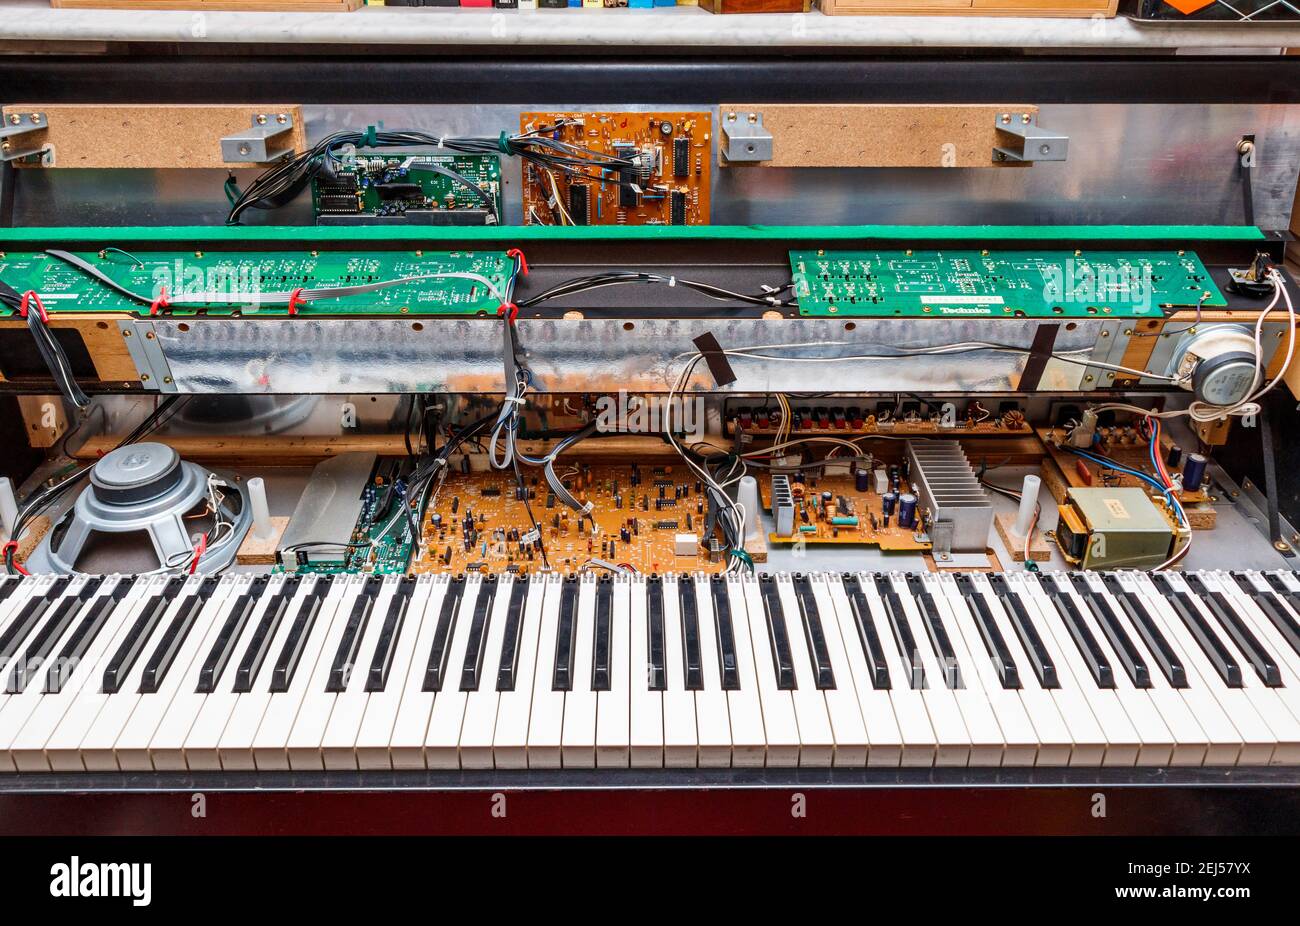 Un piano numérique Technics PX9, vers 1985, a été ouvert pour le nettoyage  et la réparation, montrant les composants électroniques qu'il contient  Photo Stock - Alamy